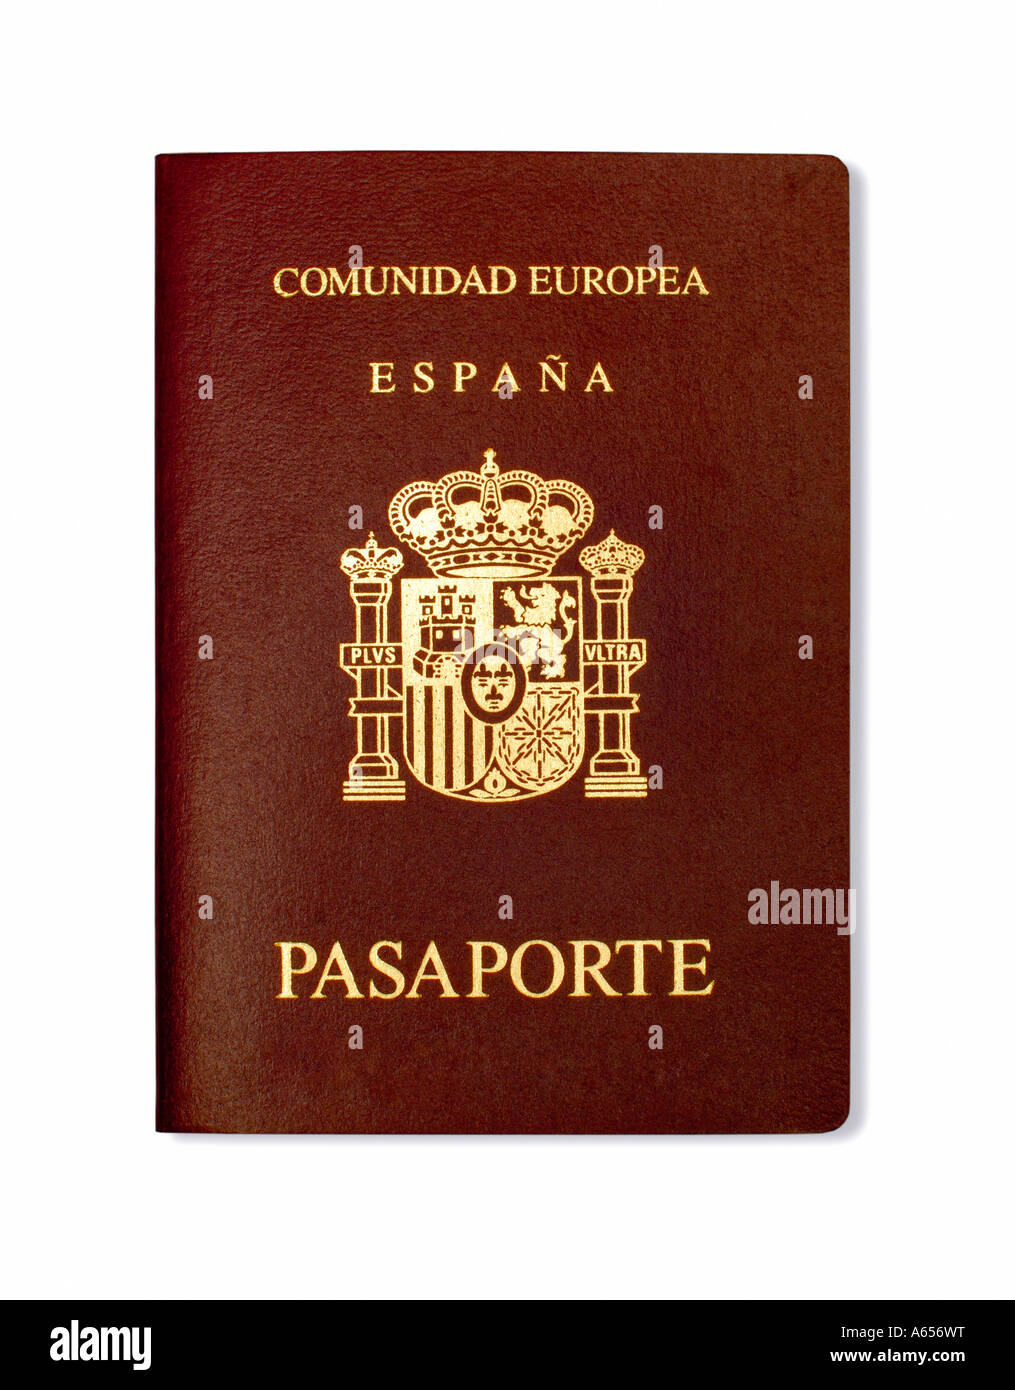 SPANISH PASSPORT ON WHITE BACKGROUND Stock Photo